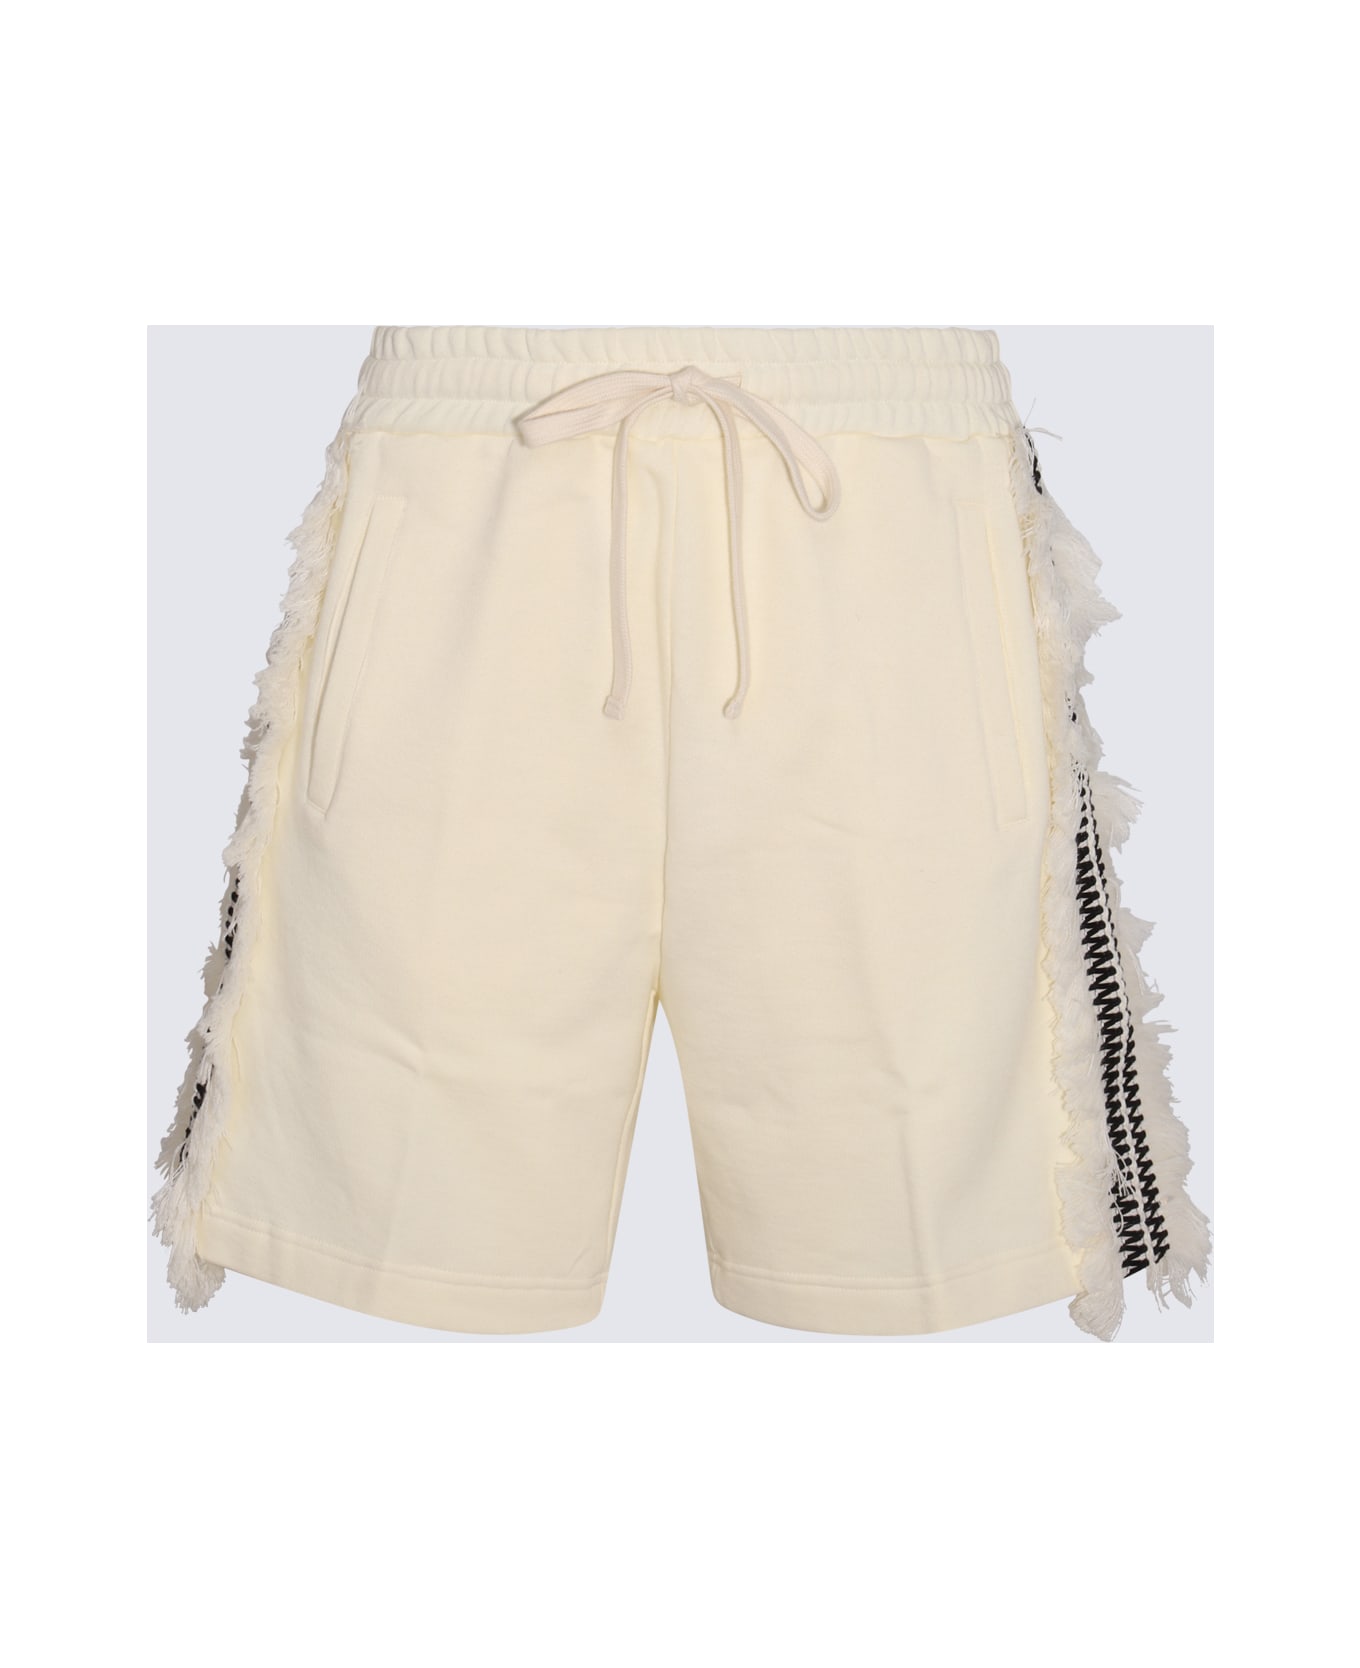 Ritos Cream Cotton Shorts